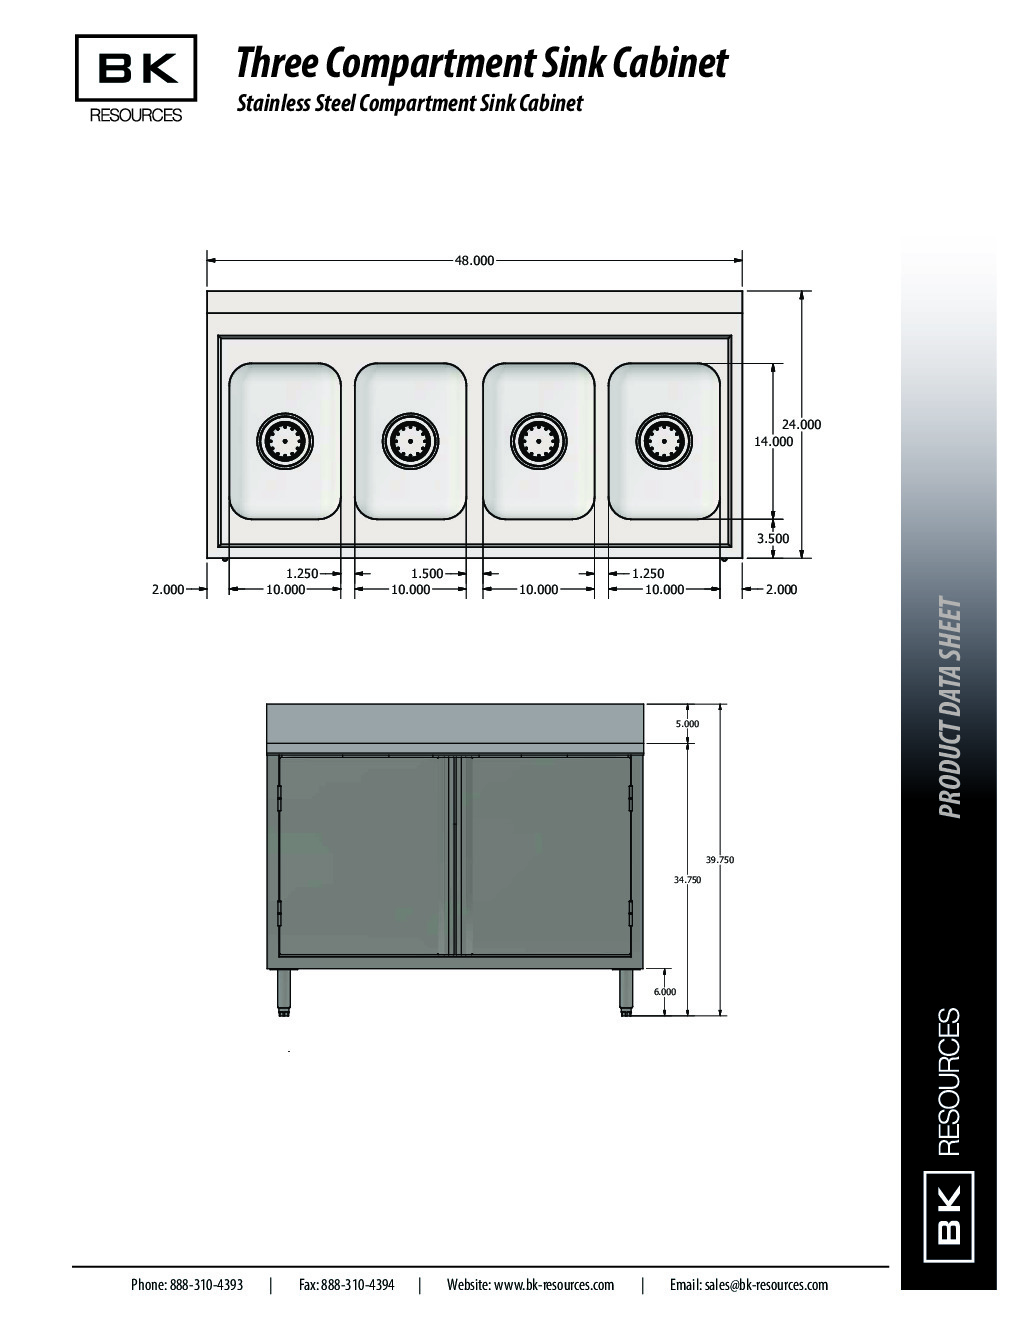 BK Resources CSTR5-4-1014H (4) Four Compartment Sink